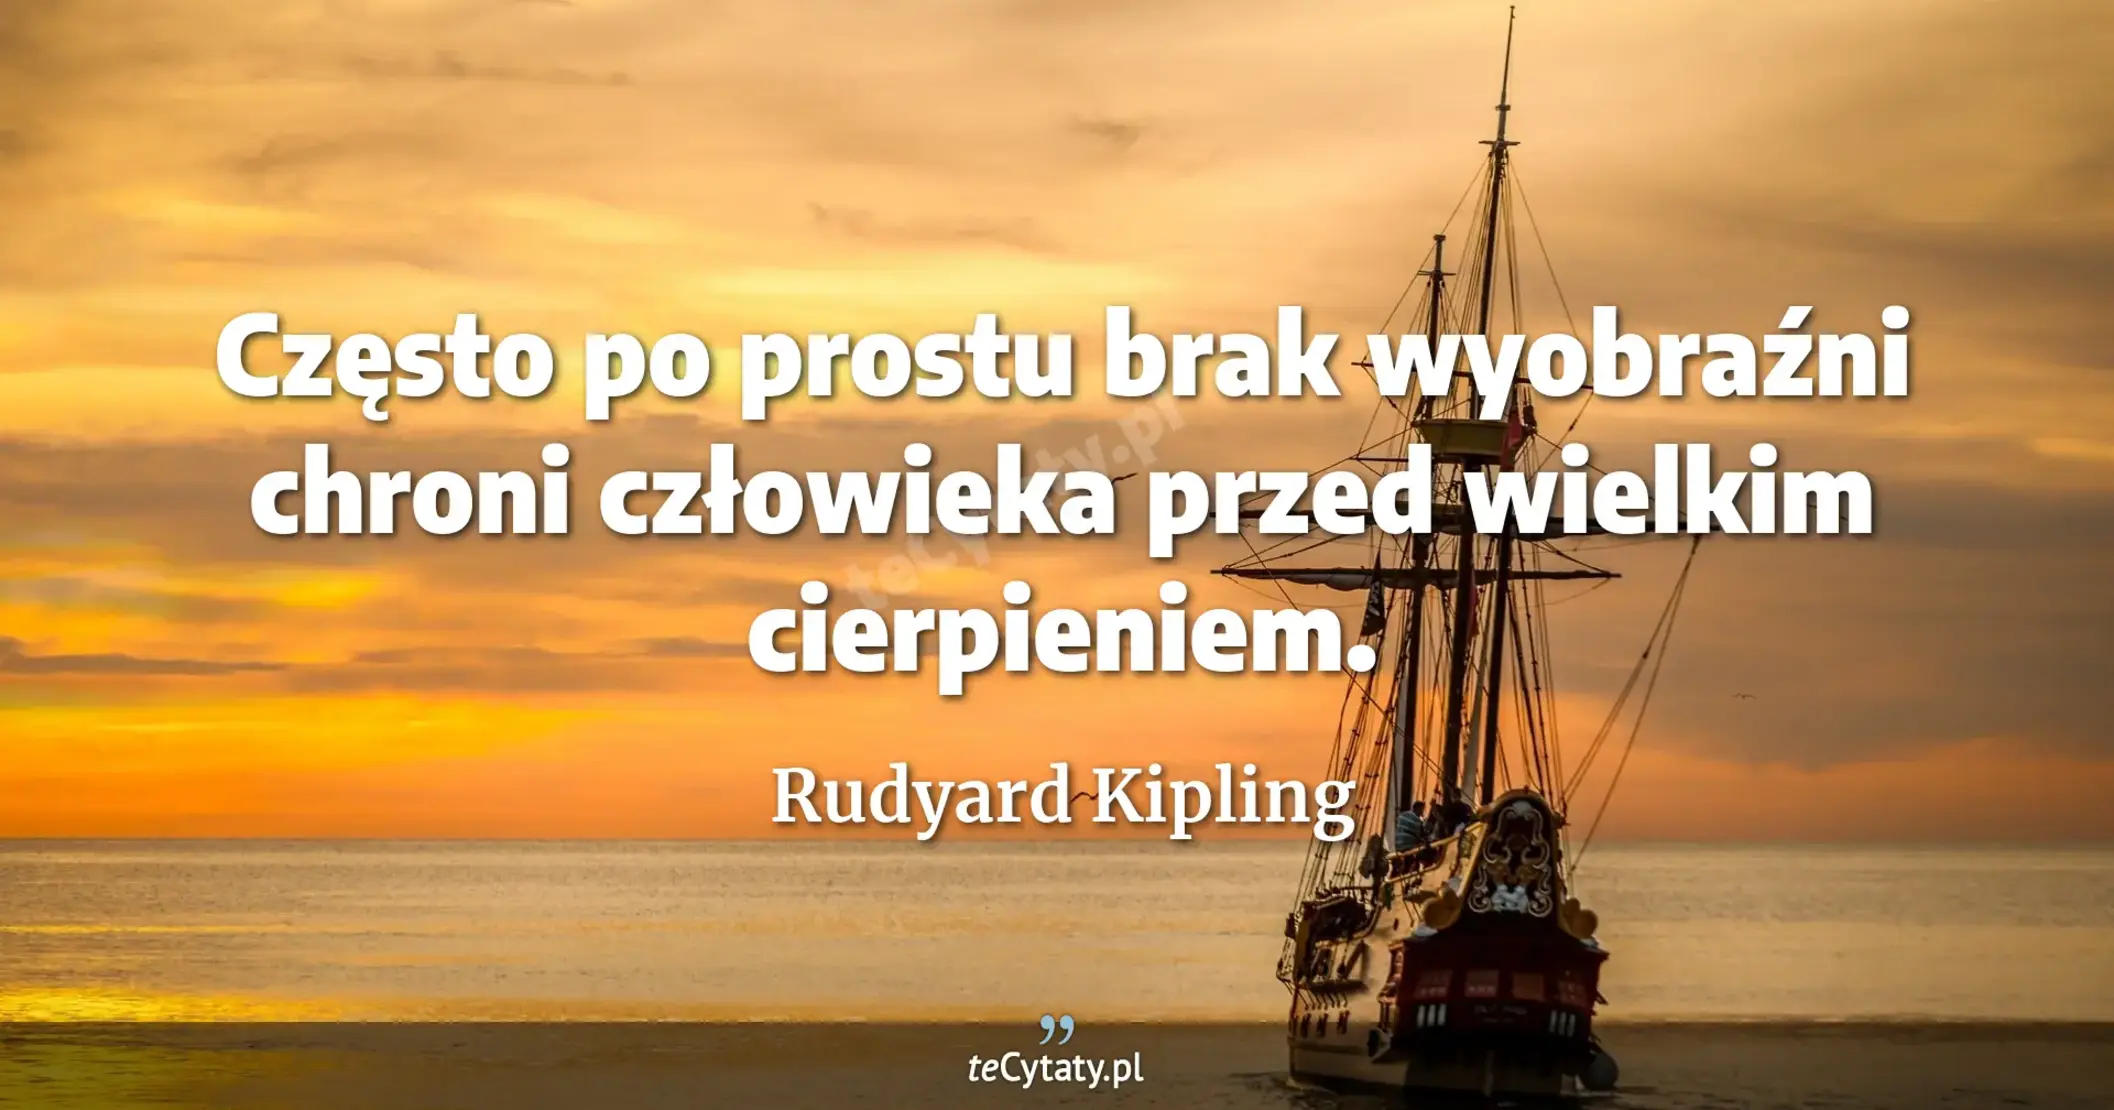 Często po prostu brak wyobraźni chroni człowieka przed wielkim cierpieniem. - Rudyard Kipling